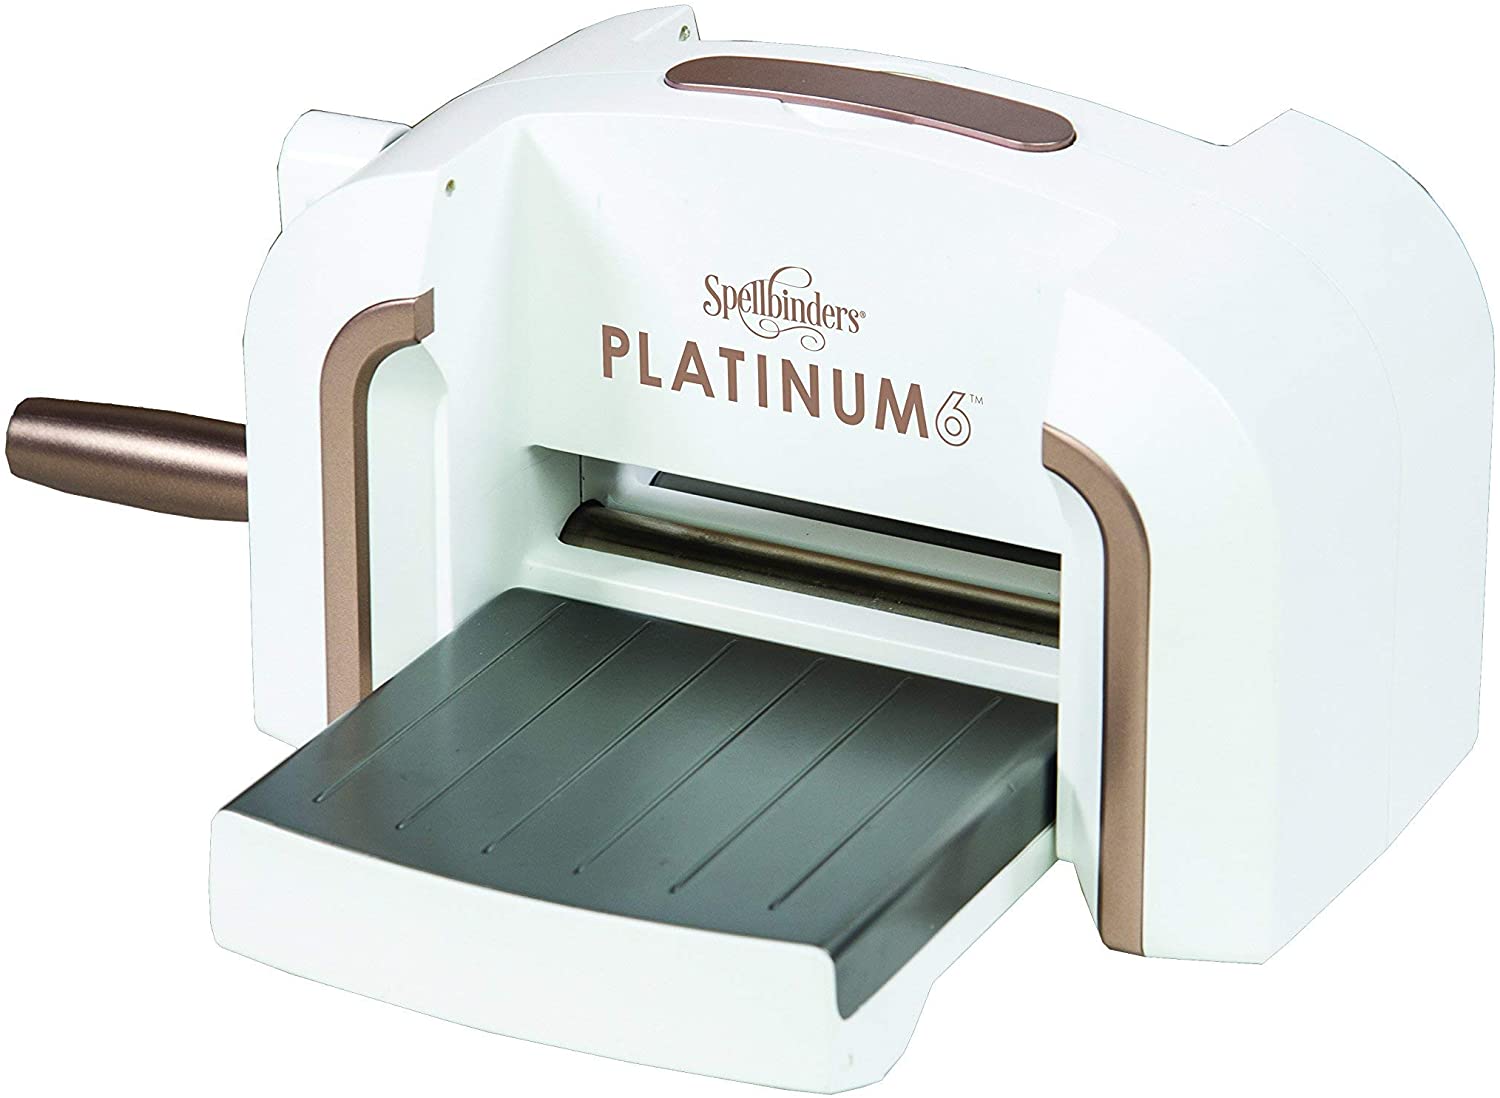 La mejor máquina de estampado y troquelado para cortar varias capas a la vez: Spellbinders Platinum